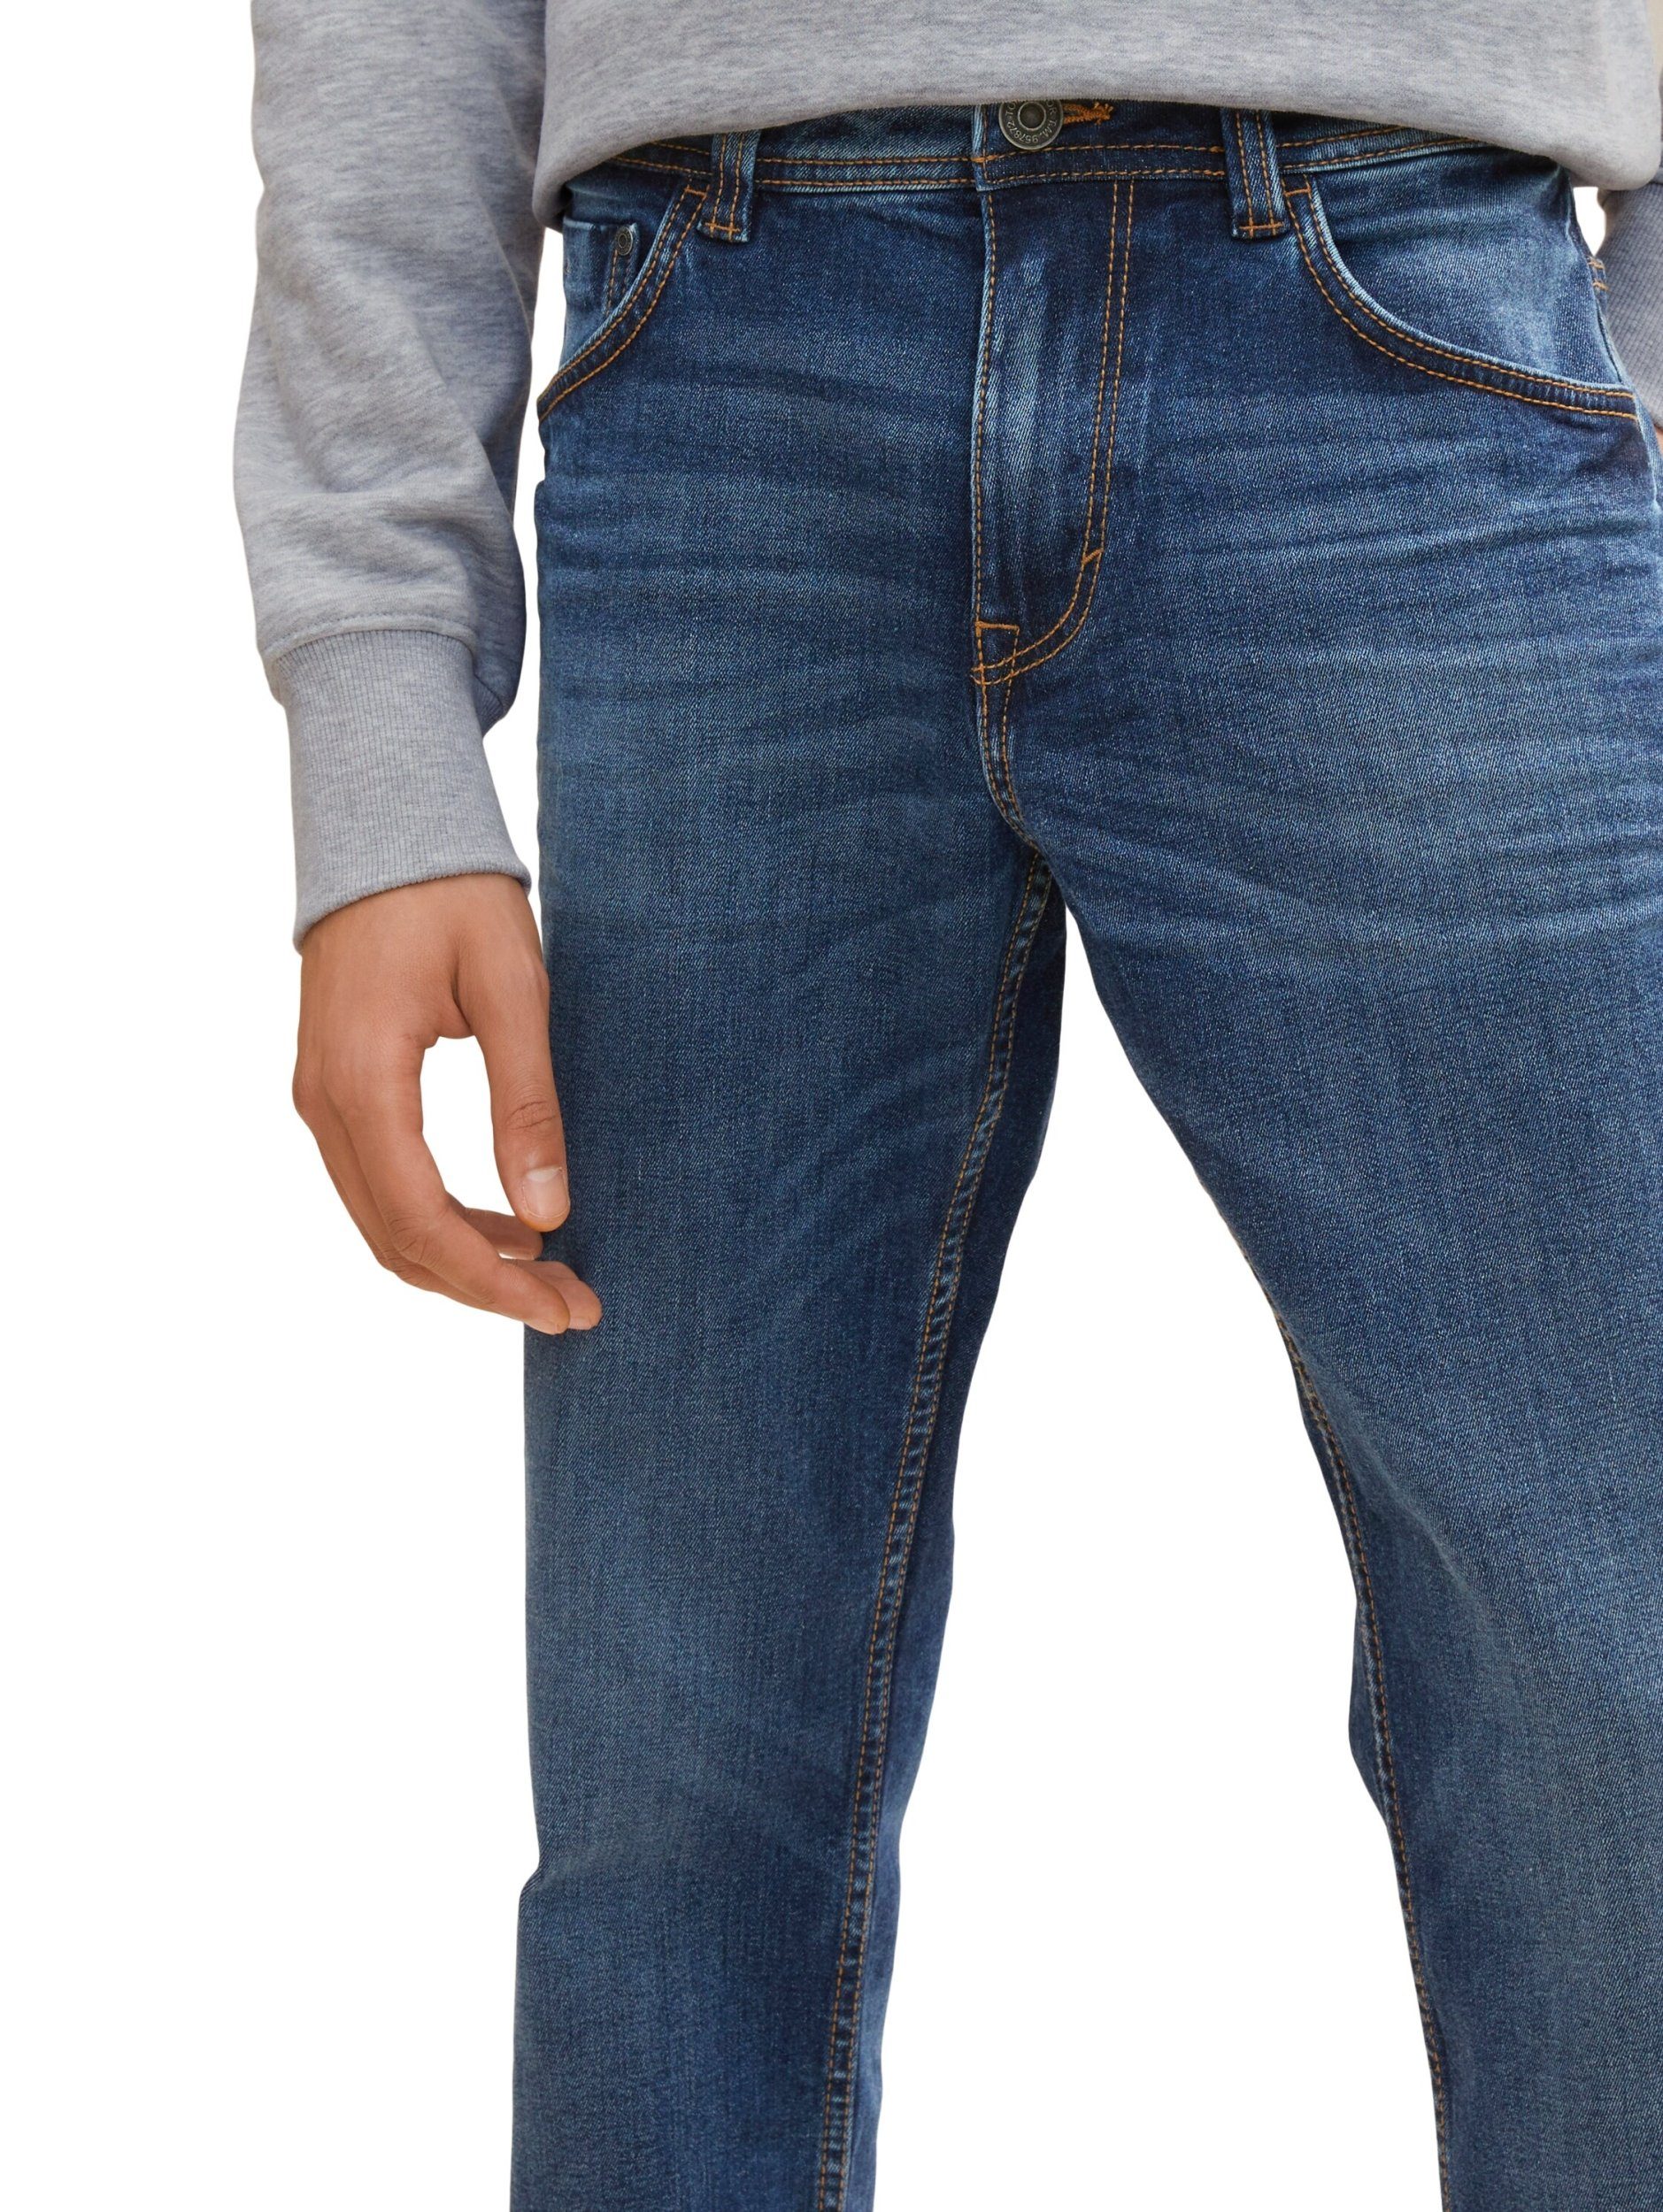 Tailor Tom TOM 5-Pocket-Jeans TAILOR Marvin blau